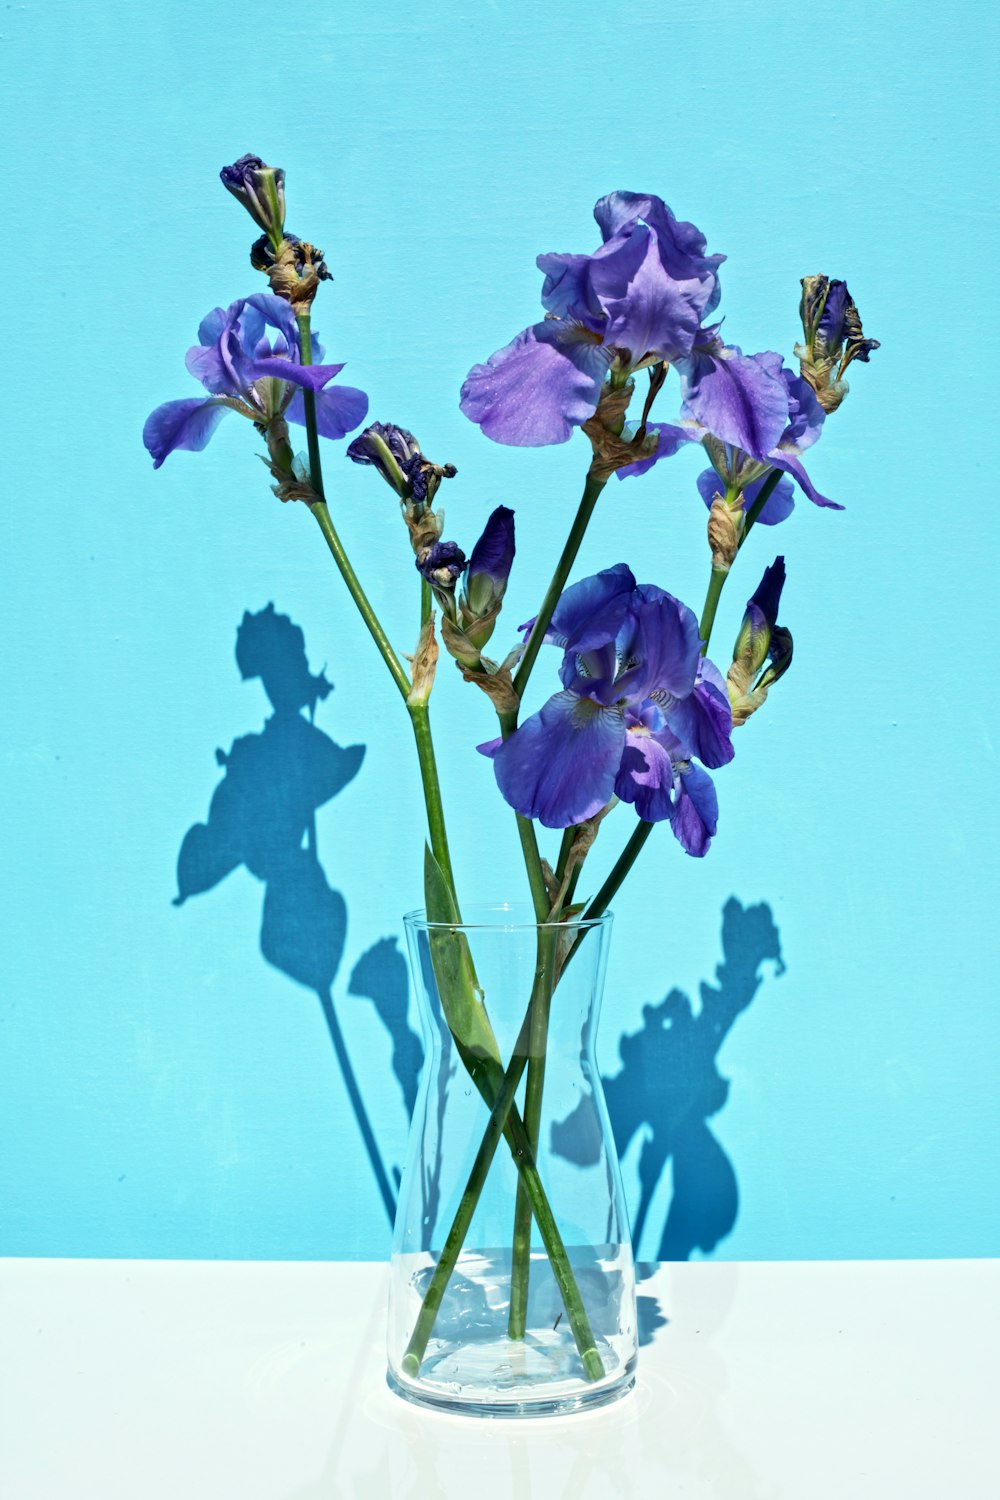 purple-petaled flower in glass vase